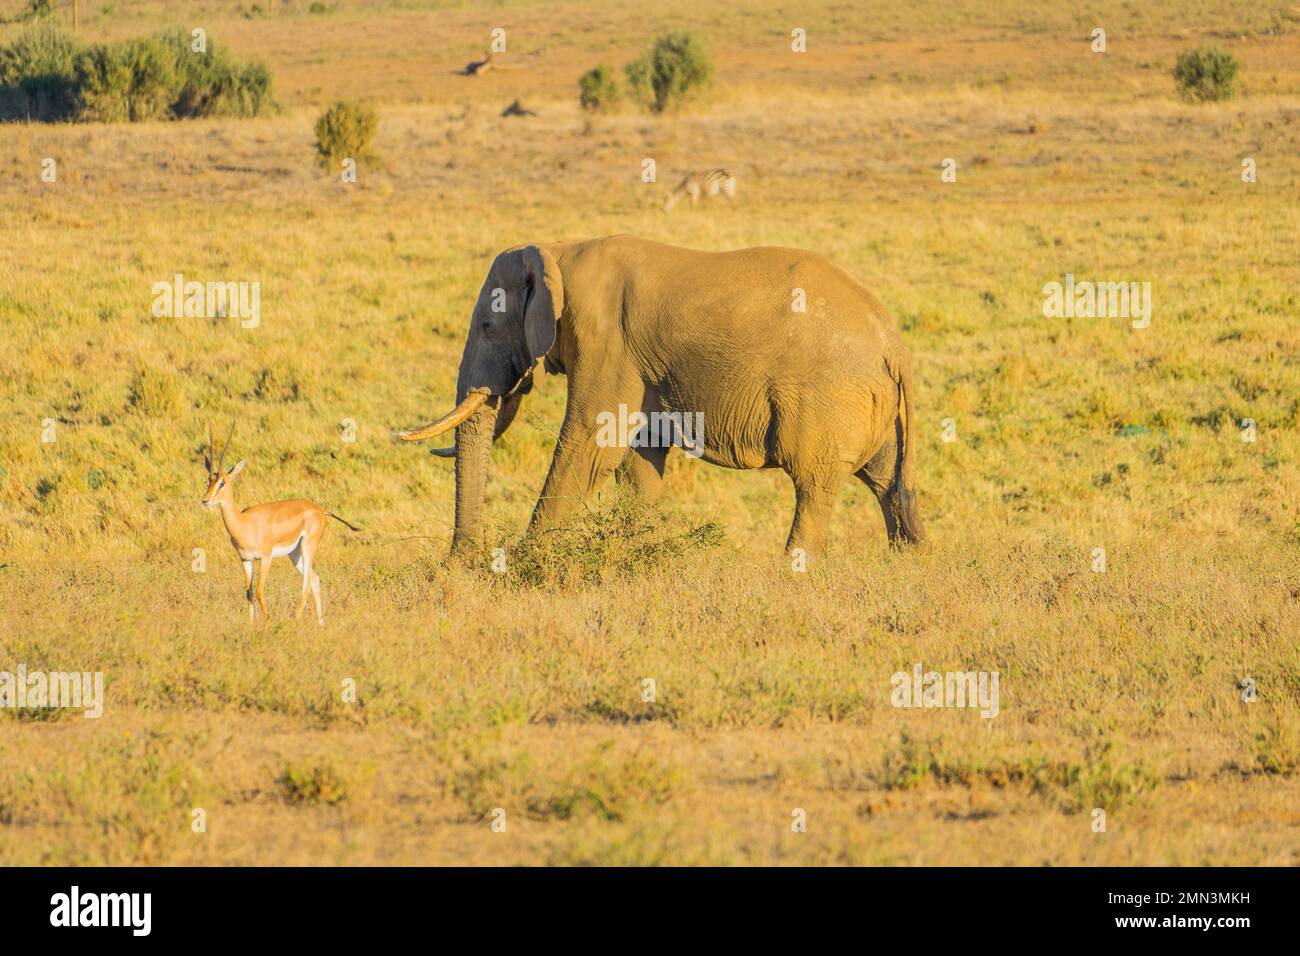 Wild elephants in Africa Stock Photo